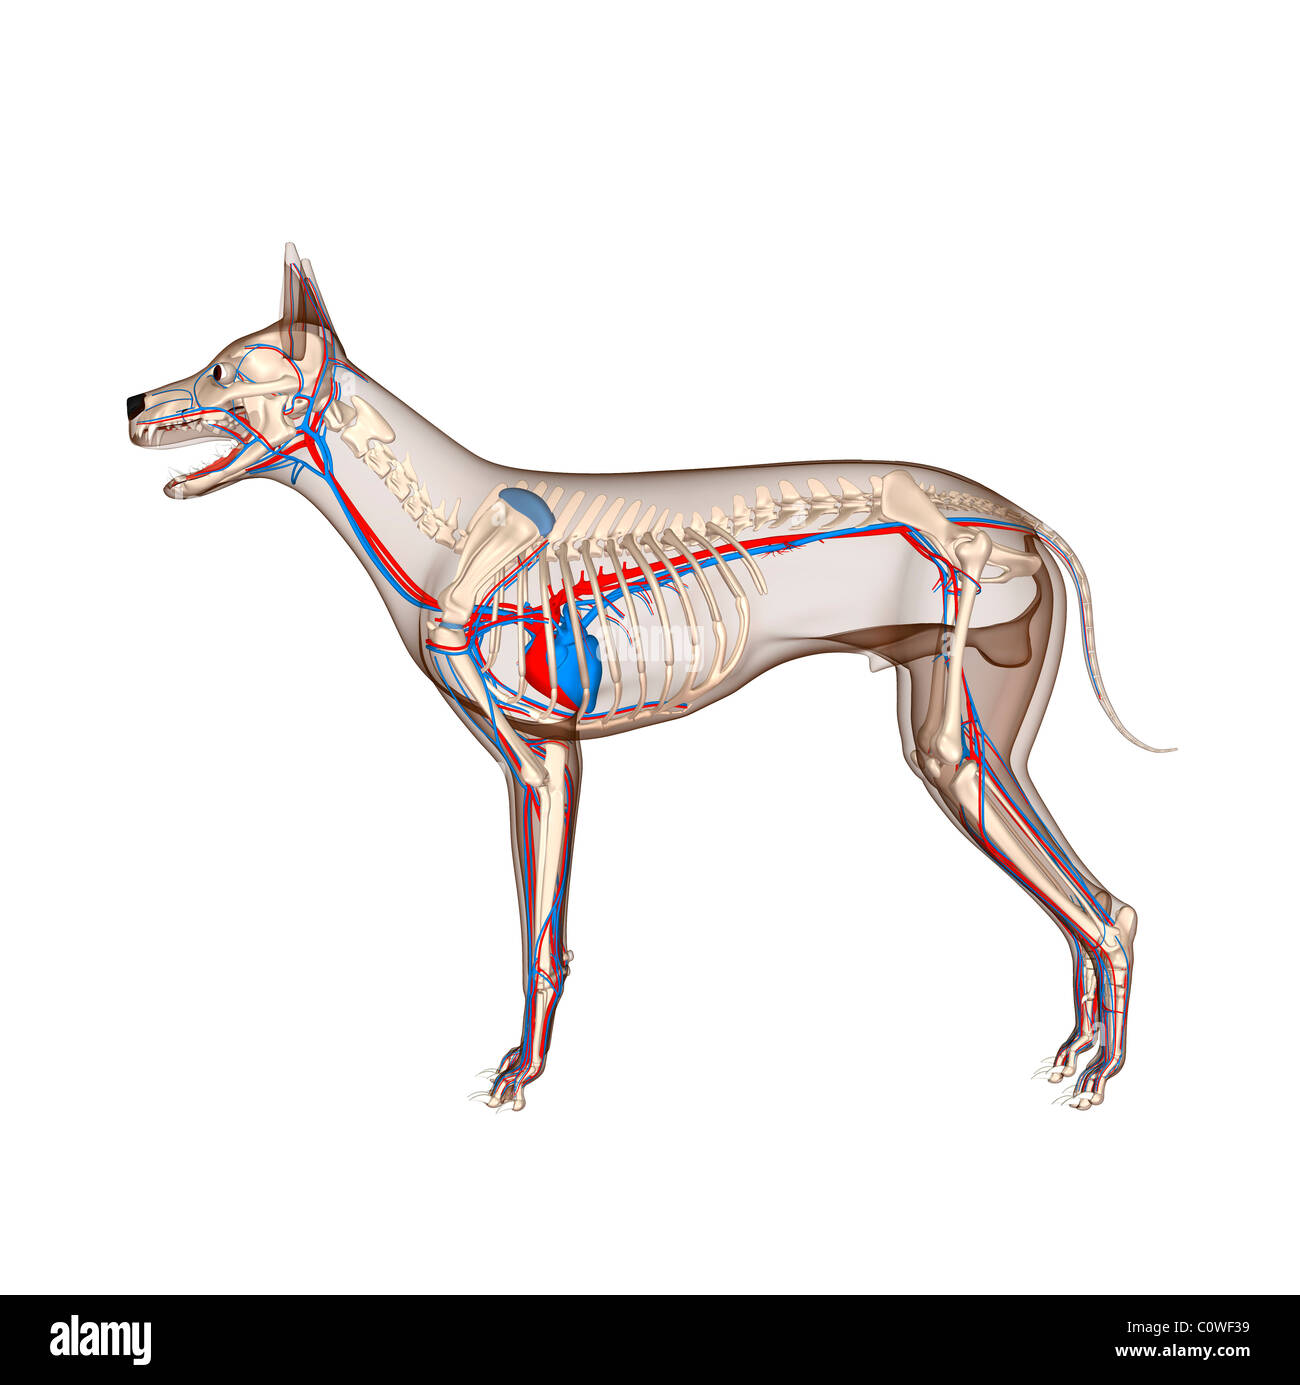 Anatomia del cane immagini e fotografie stock ad alta risoluzione - Alamy